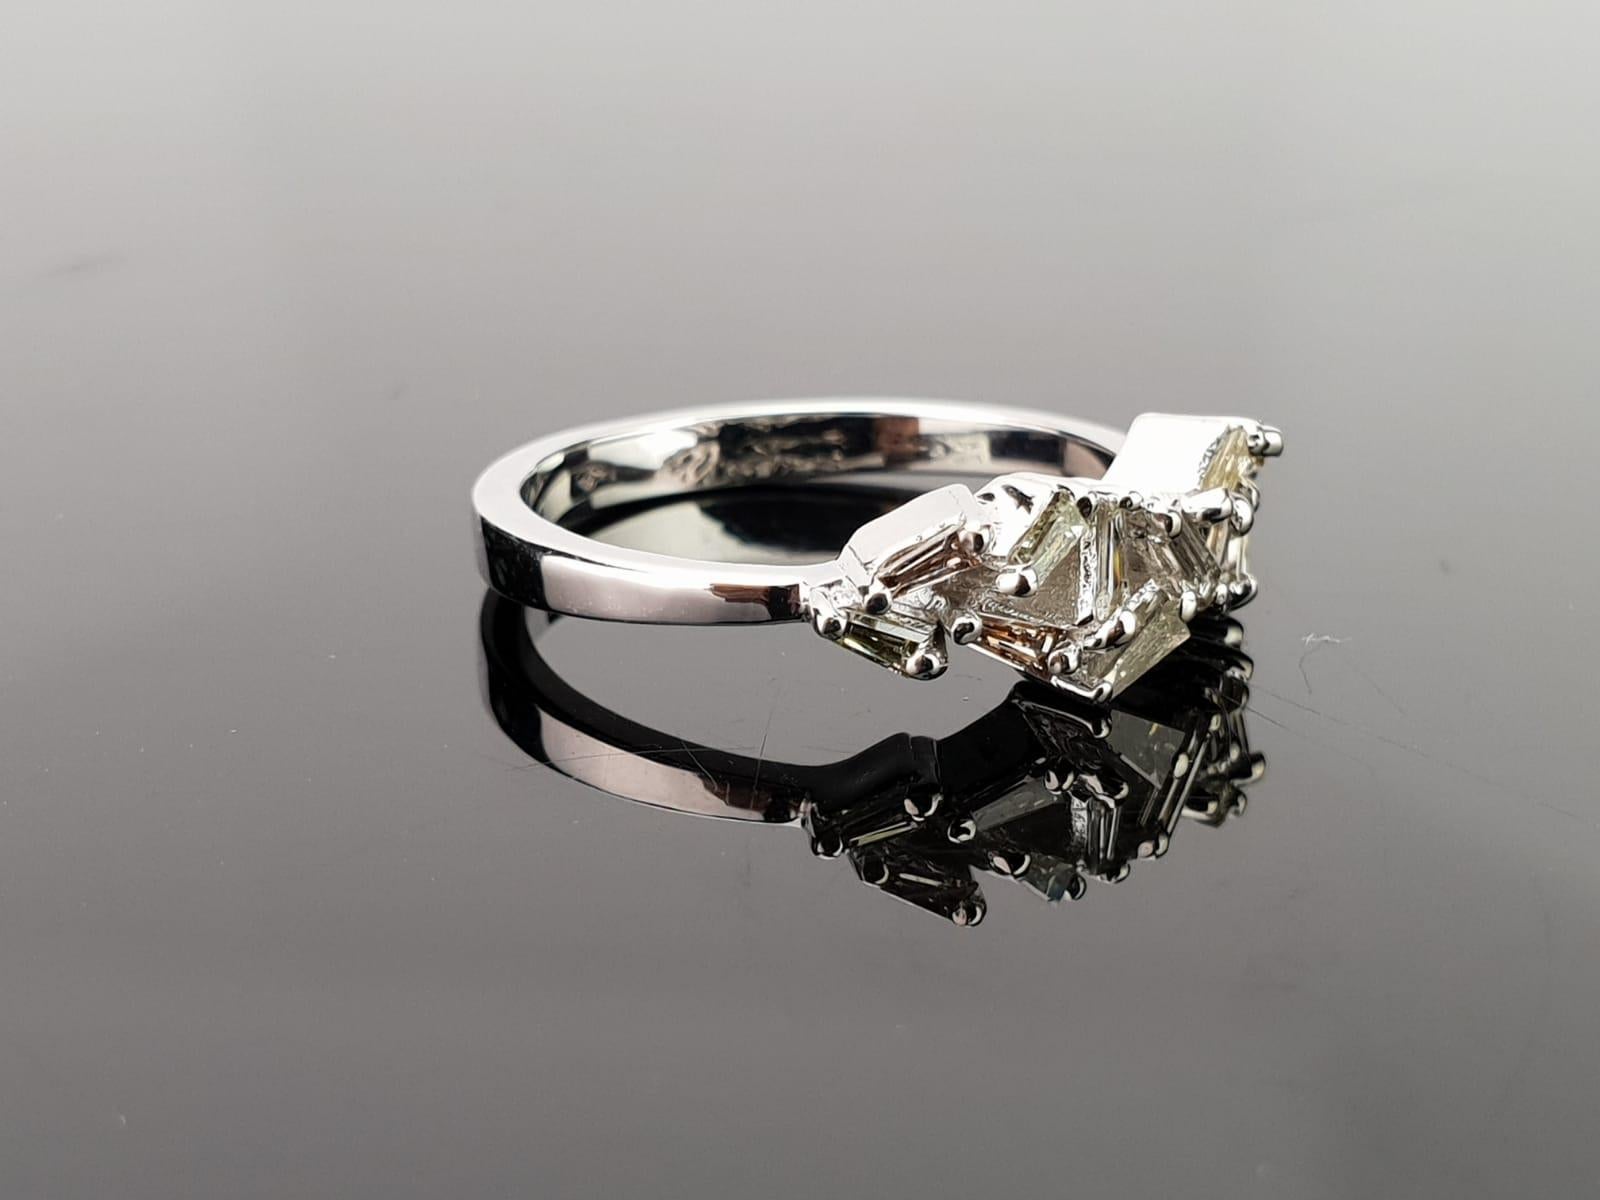 Ein schlichter Ring mit Baguetten aus weißen Diamanten, gefasst in 18 Karat Weißgold, kann als Einzelring getragen werden oder mit anderen Ringen gestapelt werden. Auch in 18K Gelbgold erhältlich.

Details zum Diamanten:  
Karat Gesamtgewicht: 0,37